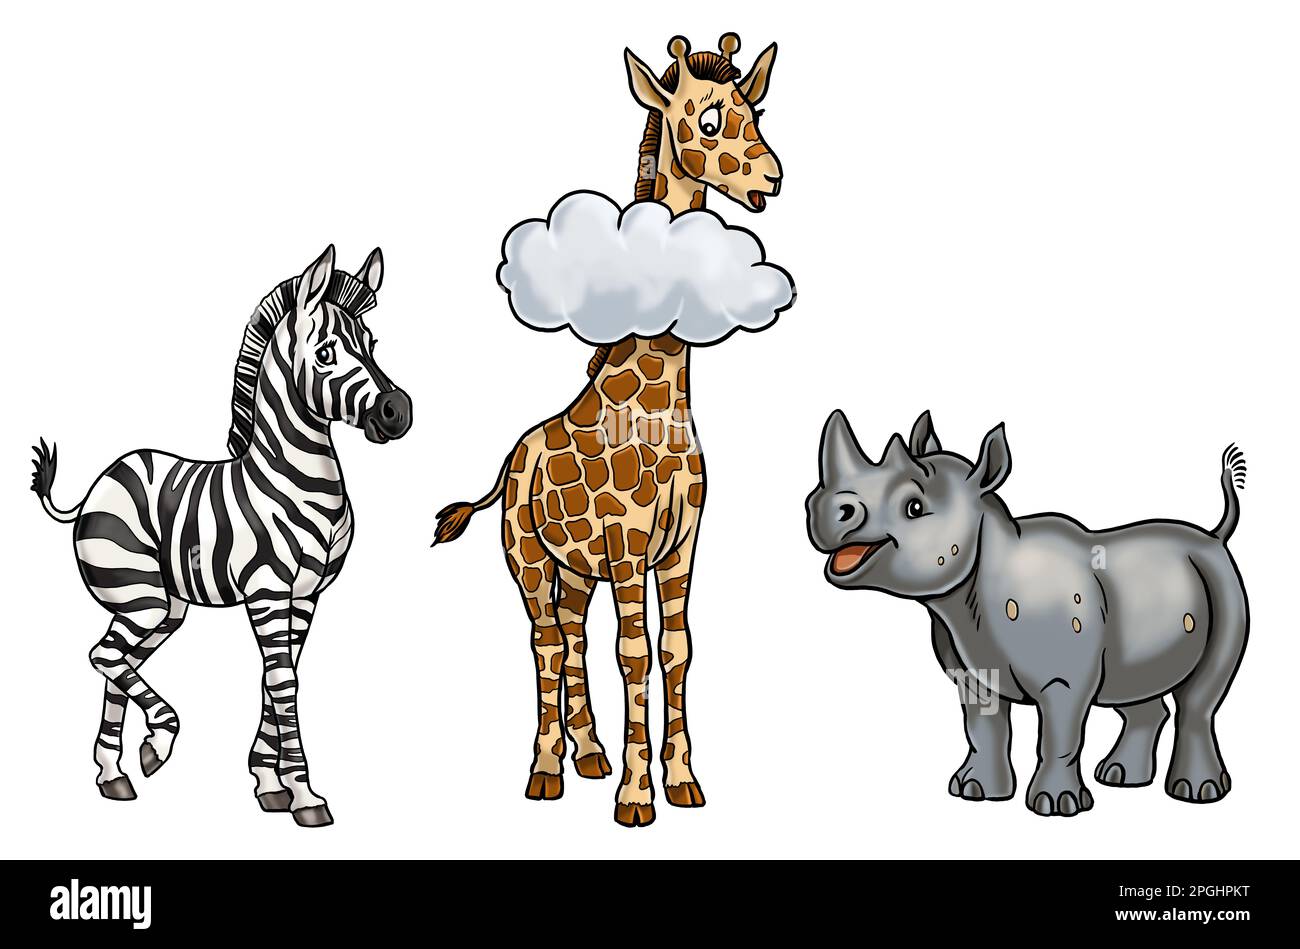 Illustration de rhinocéros, girafe et zèbre mignonne. Modèle isolé avec animaux amusants et heureux. Page de coloriage pour enfants. Banque D'Images